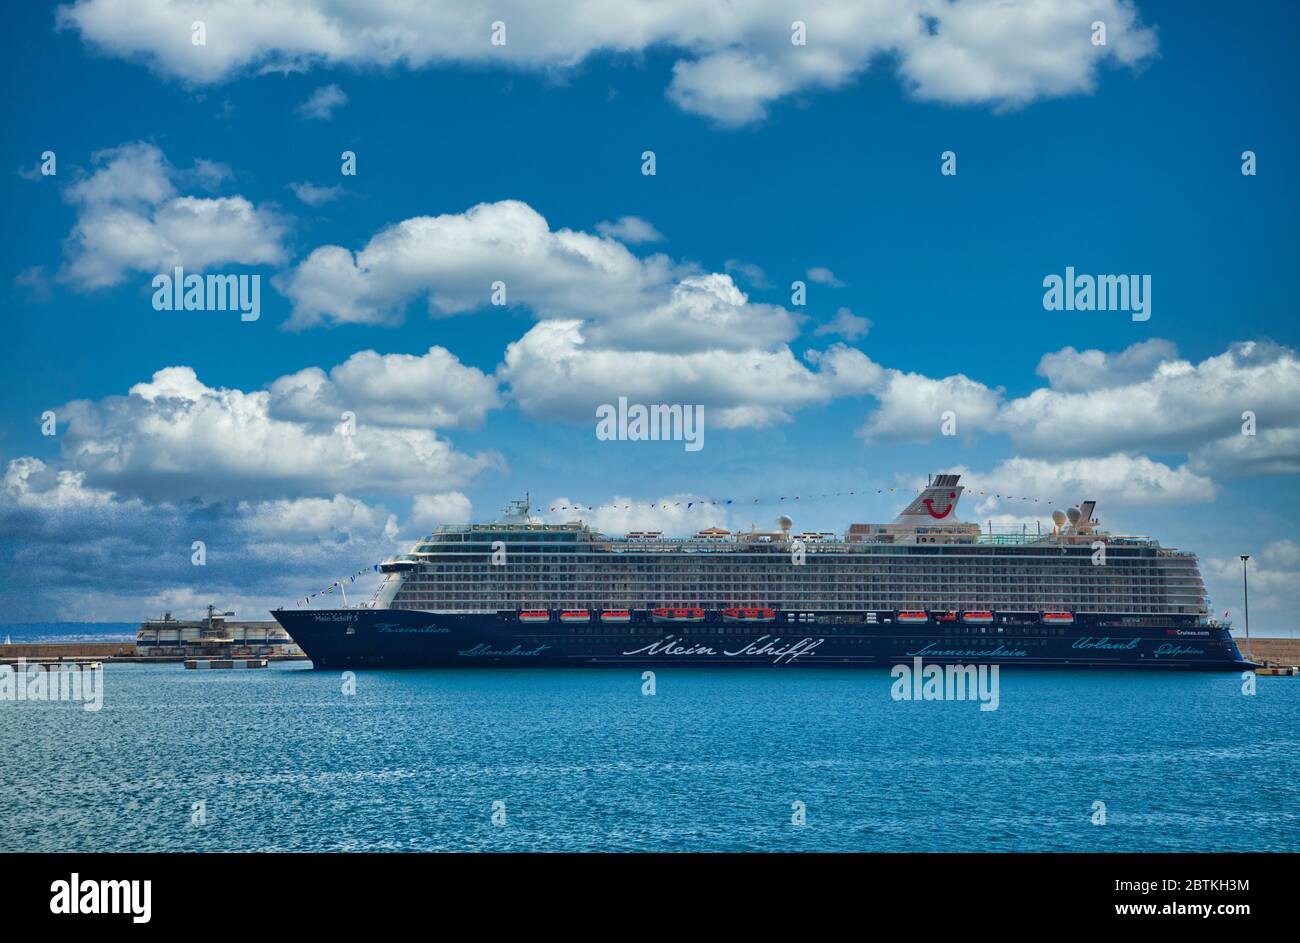 PALMA, ESPAGNE - 23 septembre 2016 : Mein Schiff est administré par TUI Cruises, basée en Allemagne. C'est une coentreprise entre la société allemande du tourisme TUI Banque D'Images